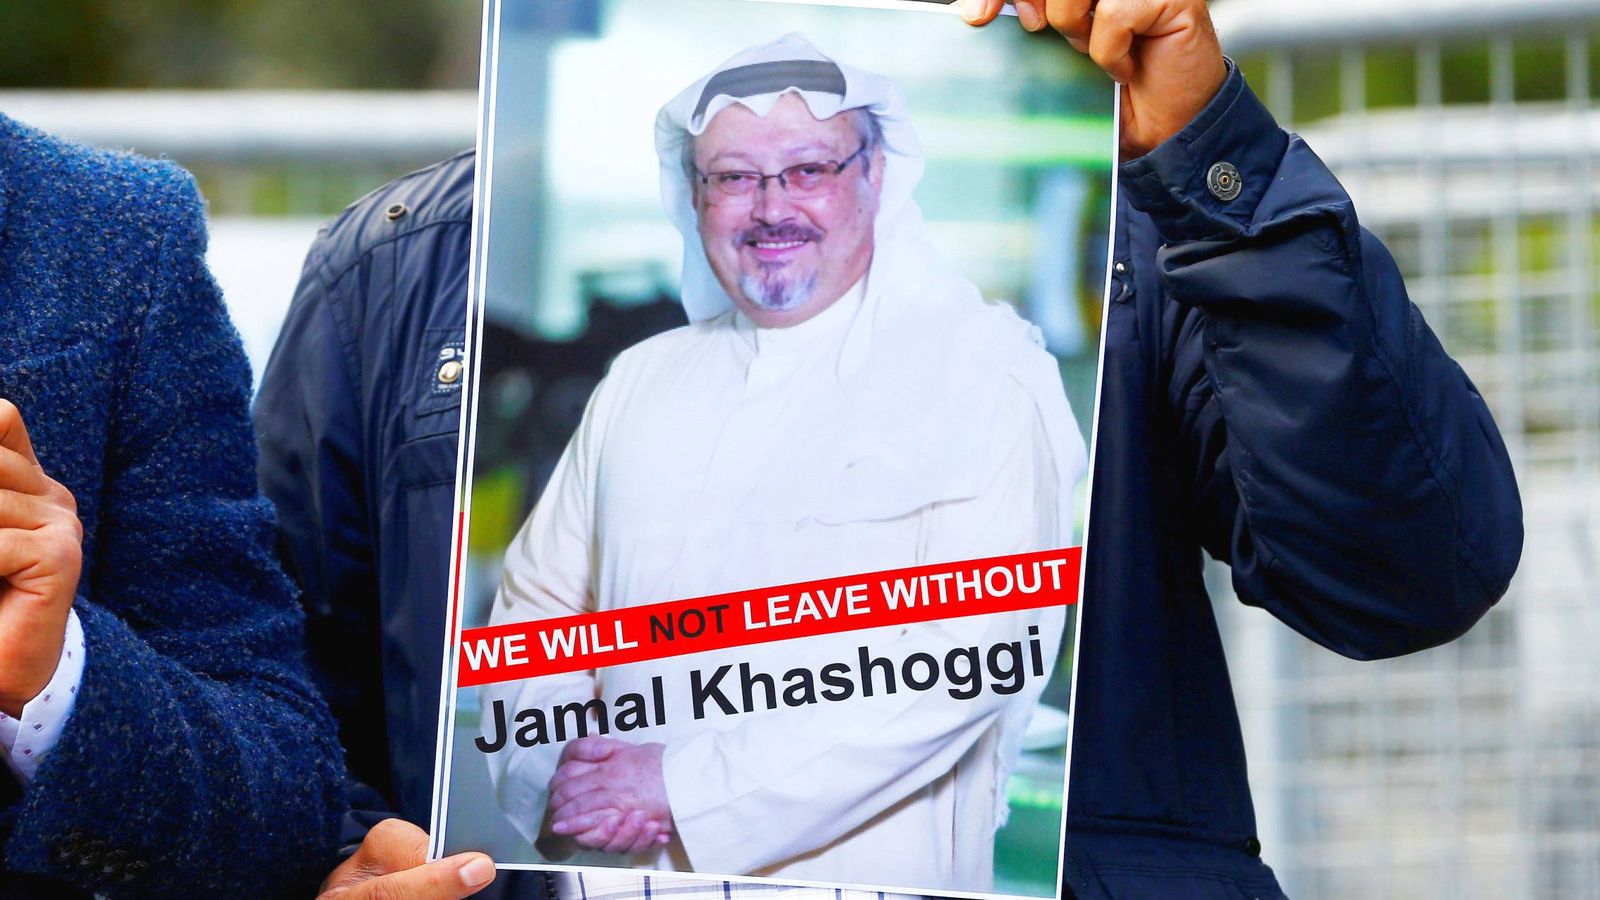 Foto: Protesta a favor de Khashoggi. (Reuters)